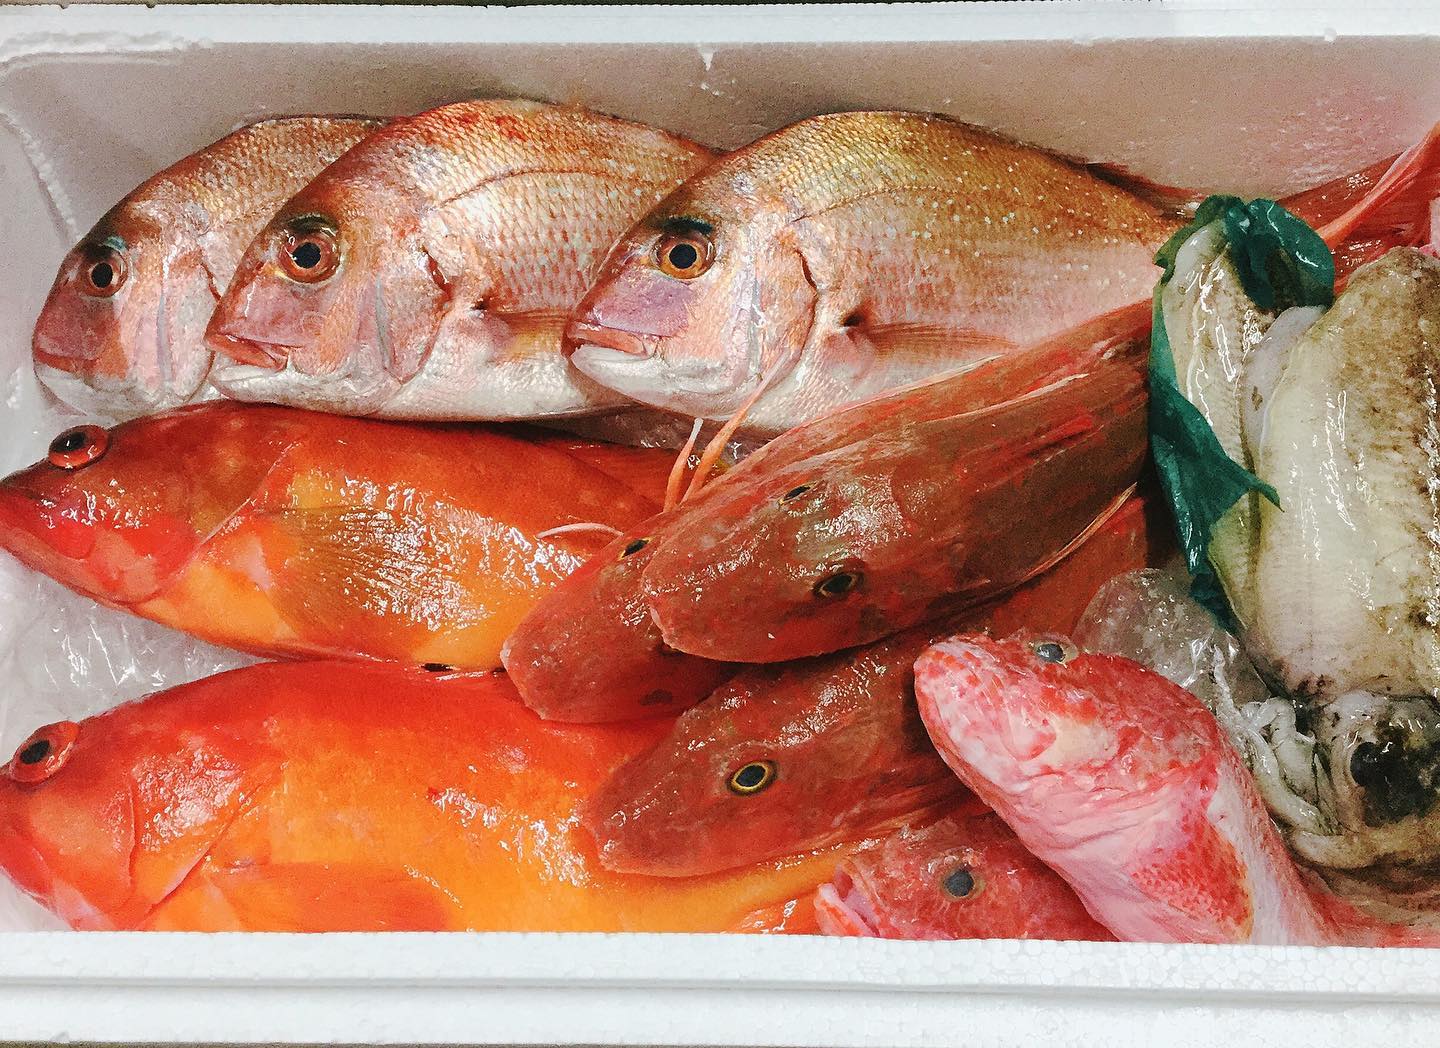 豊洲市場から新鮮な魚介が入荷しましたー️
福岡の天然真鯛、ホウボウ、コウイカ。
長崎のアカハタとオニカサゴ。

特にイチオシはアカハタ️
アクアパッツァでお出しします。
ちょっと良いお値段ですが、絶対美味しいので是非
コウイカのイカスミパスタ、リゾットも好評です